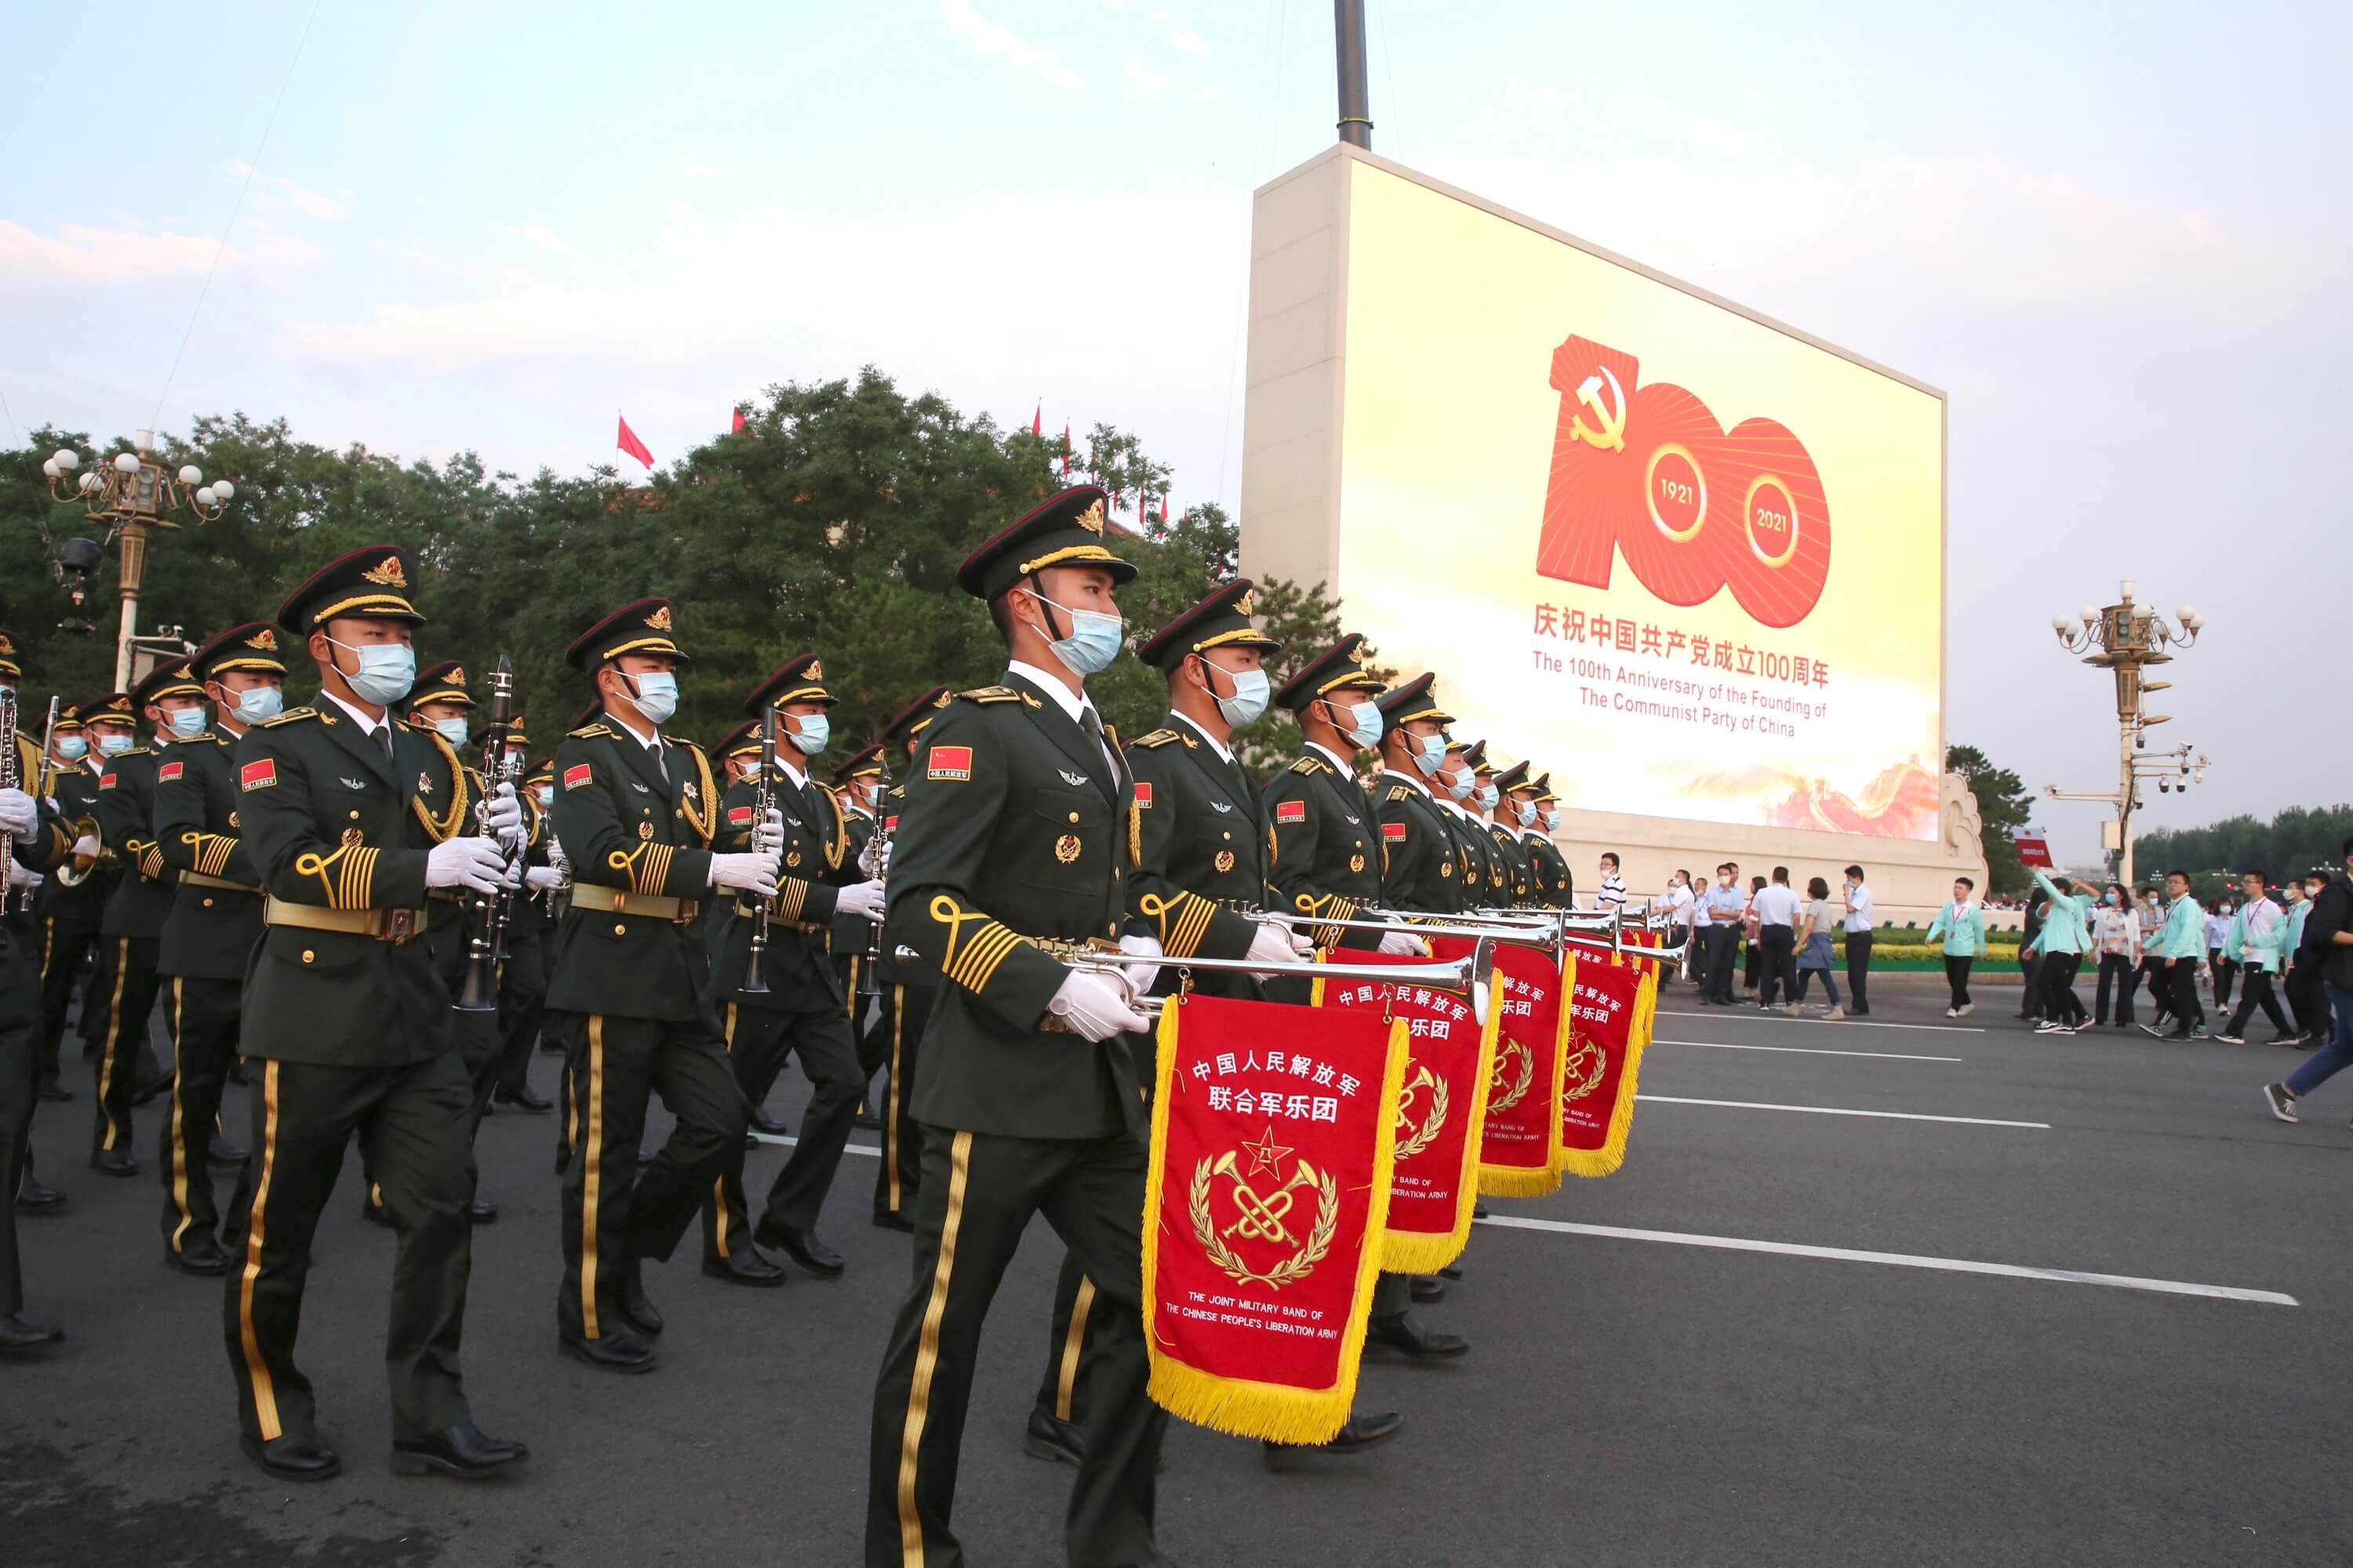 Holslag - Militaire parade in Beijing op 1 juli 2021 ter gelegenheid van het 100-jarig bestaan van de Communistische Partij. © The Yomiuri Shimbun